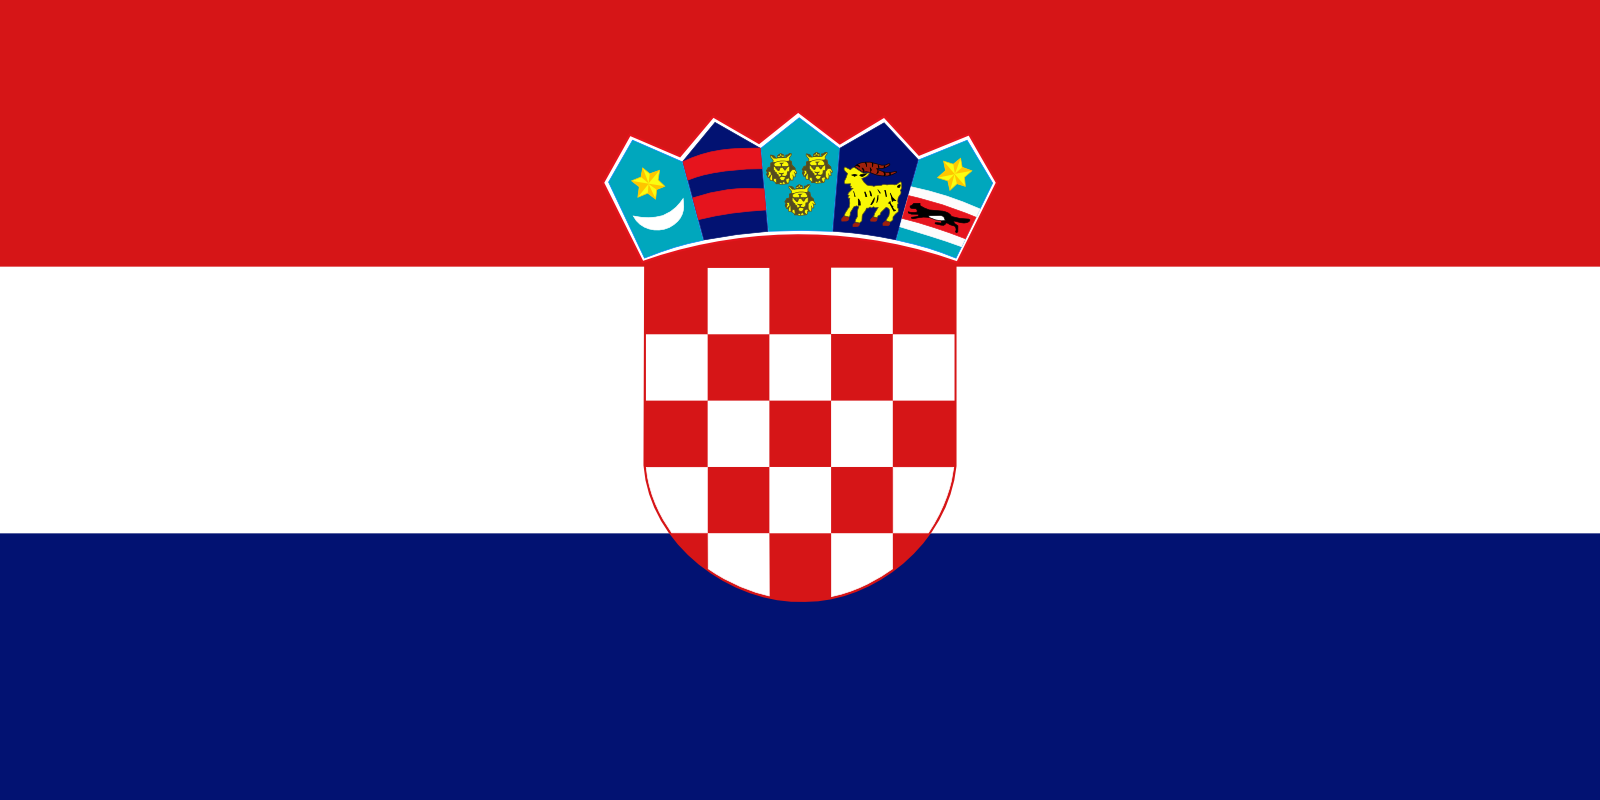 A la rencontre de nos nouveaux voisins (1) : la nouvelle revue de presse de Classe Internationale consacrée à la Croatie